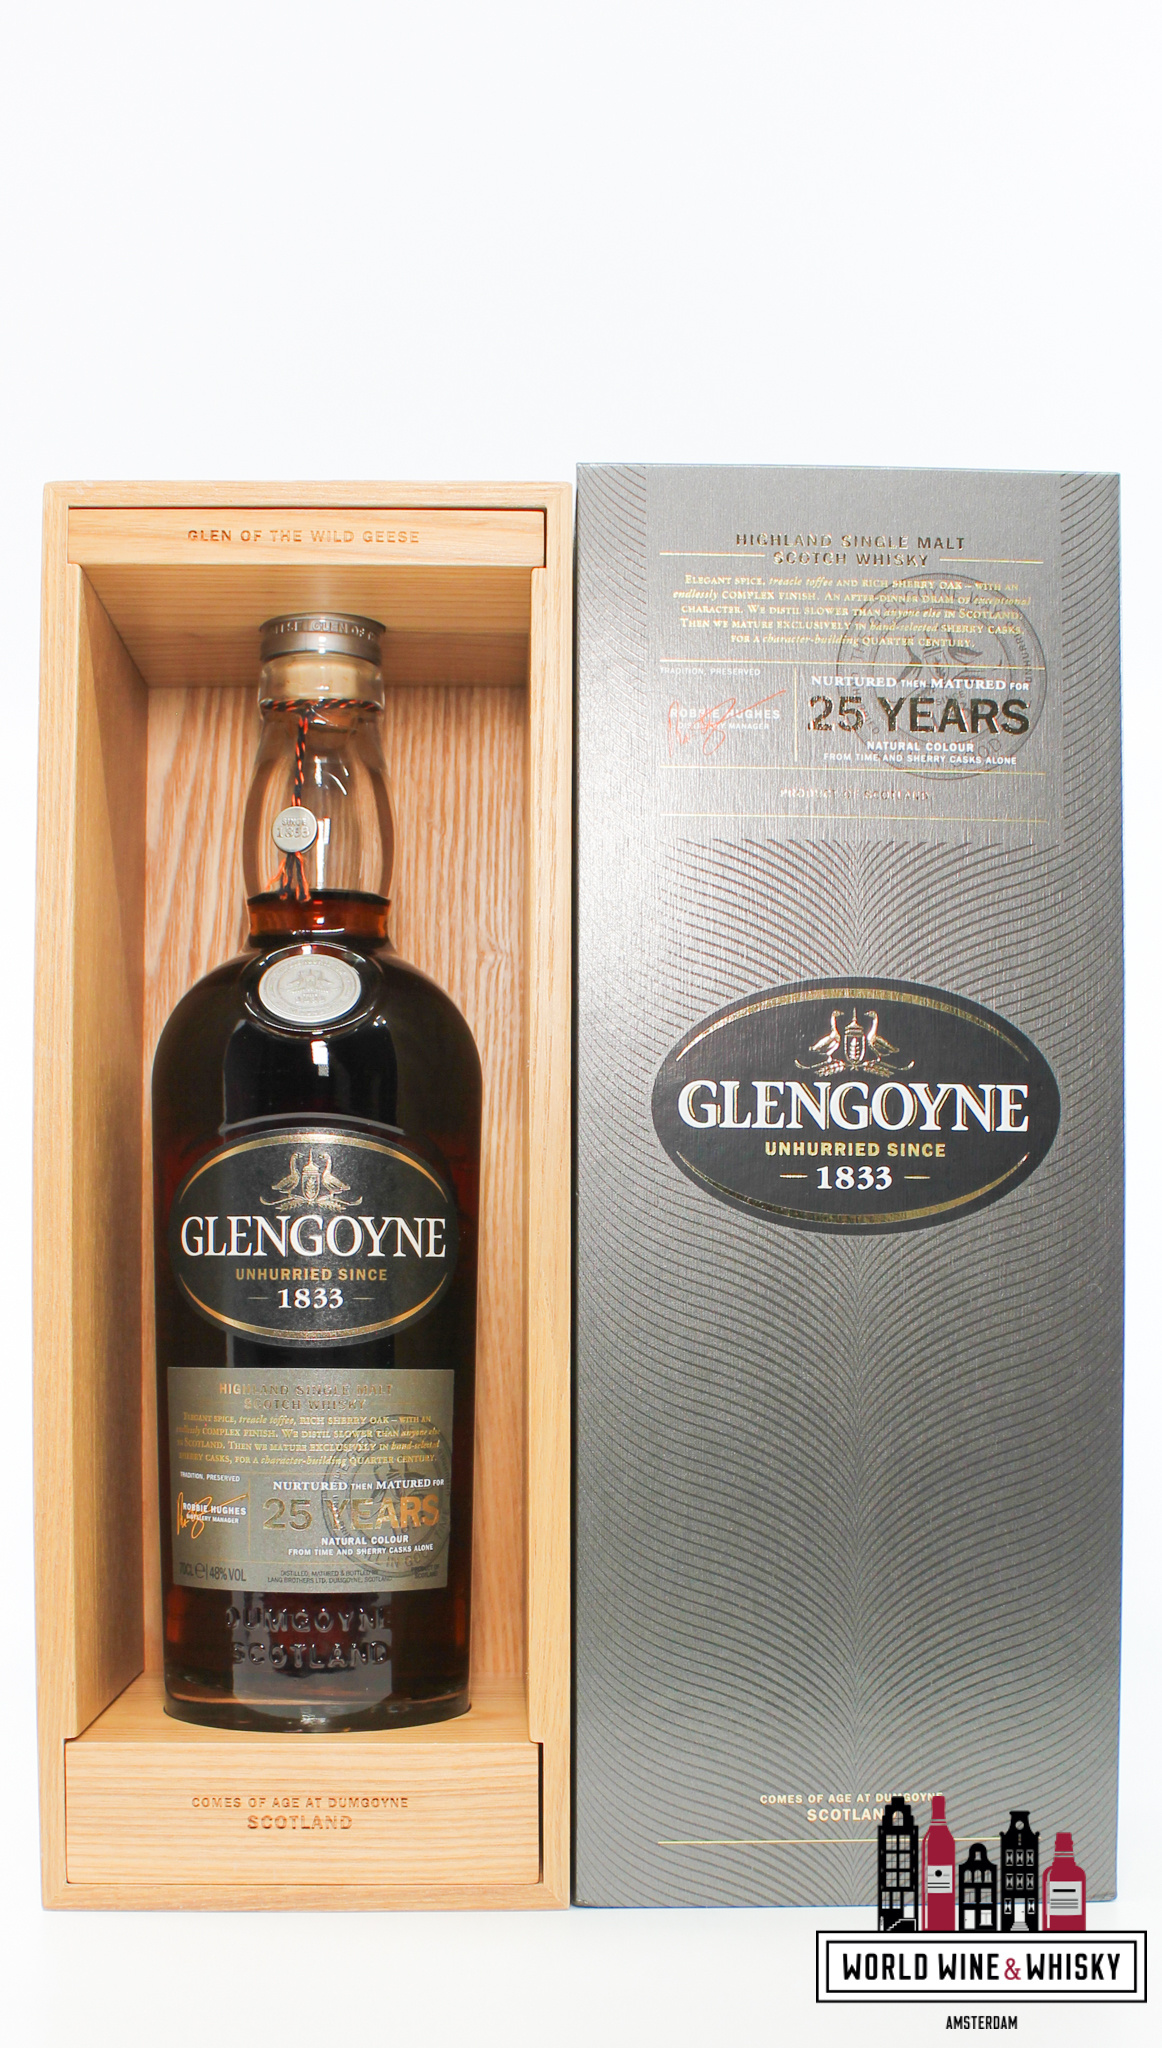 Glengoyne Glengoyne 25 Years Old 2019 - Unhurried Since 1833 48%